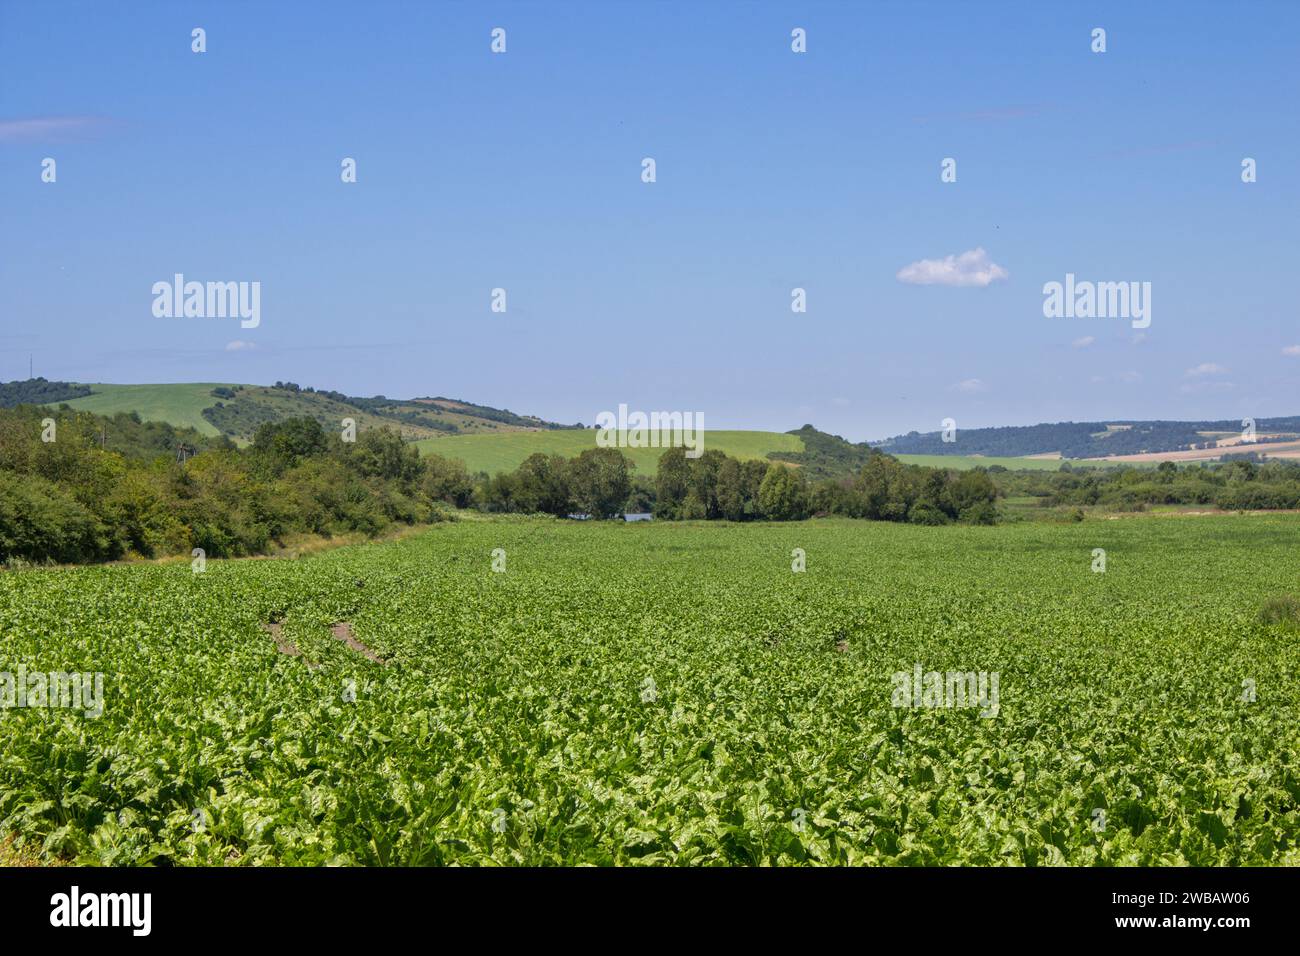 Bellissimi campi di barbabietola da zucchero verde in un campo con montagne in lontananza Foto Stock